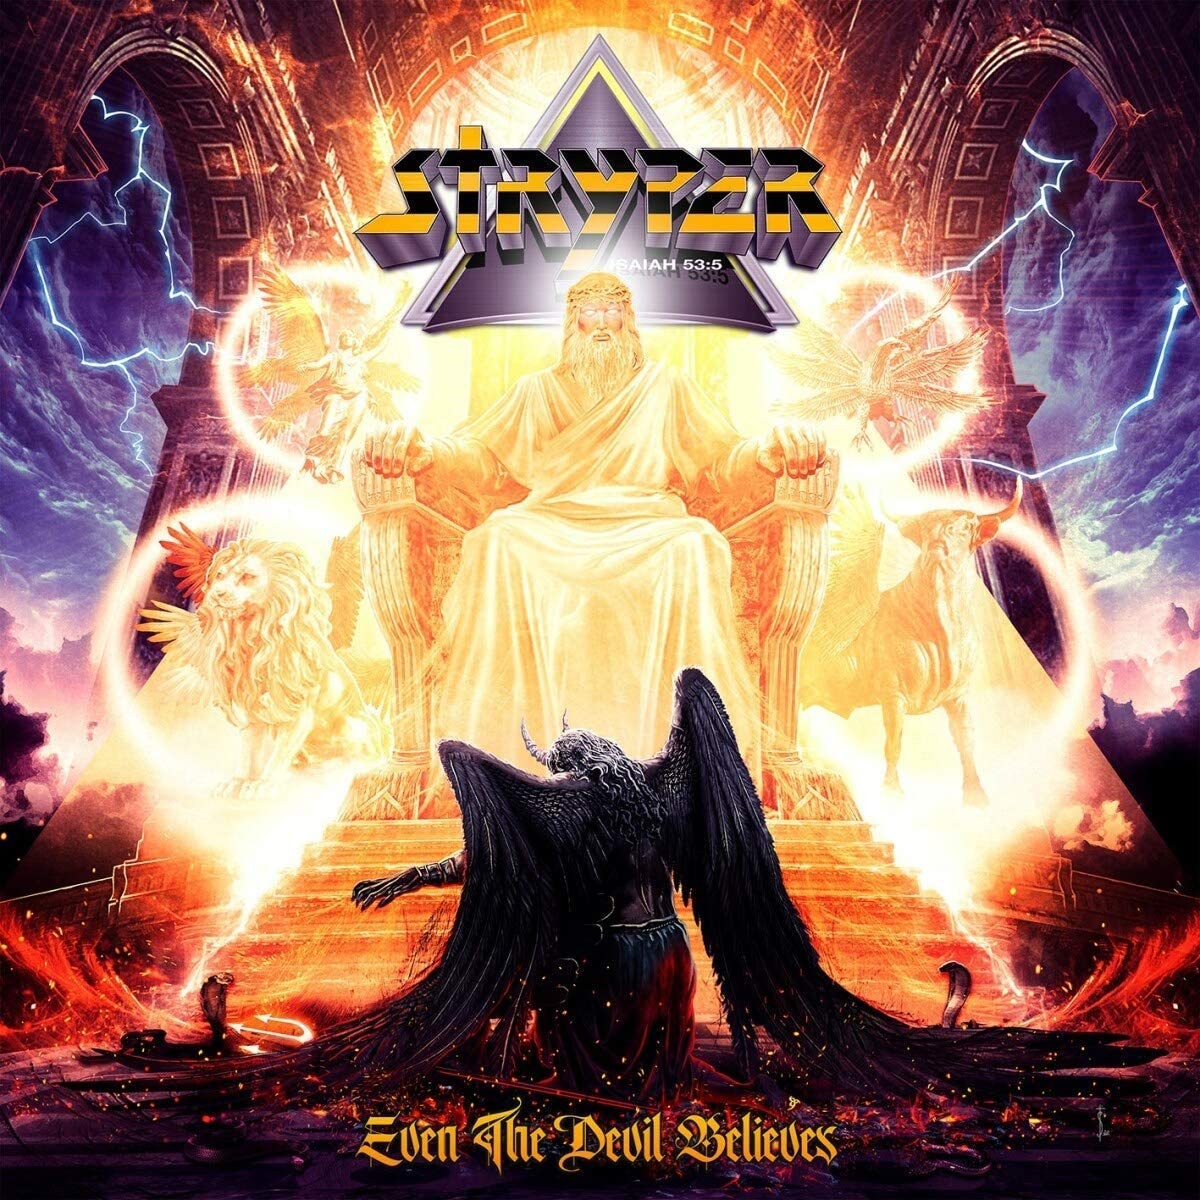 Stryper - Even the Devil Believes (Vinyl LP)